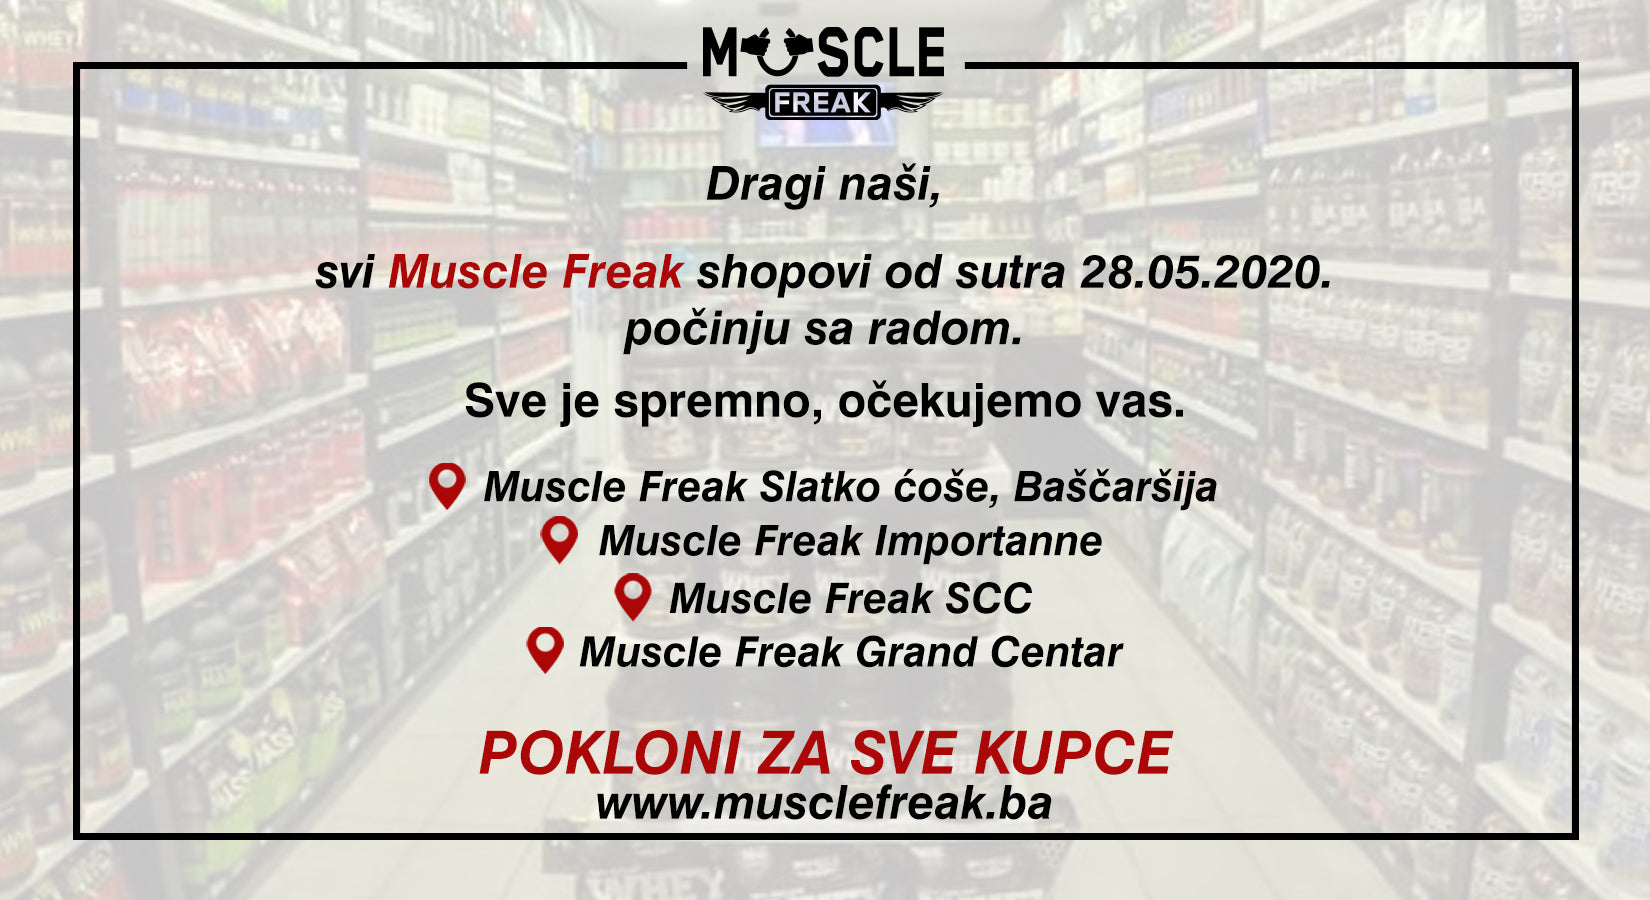 Svi Muscle Freak shopovi su ponovo otvoreni